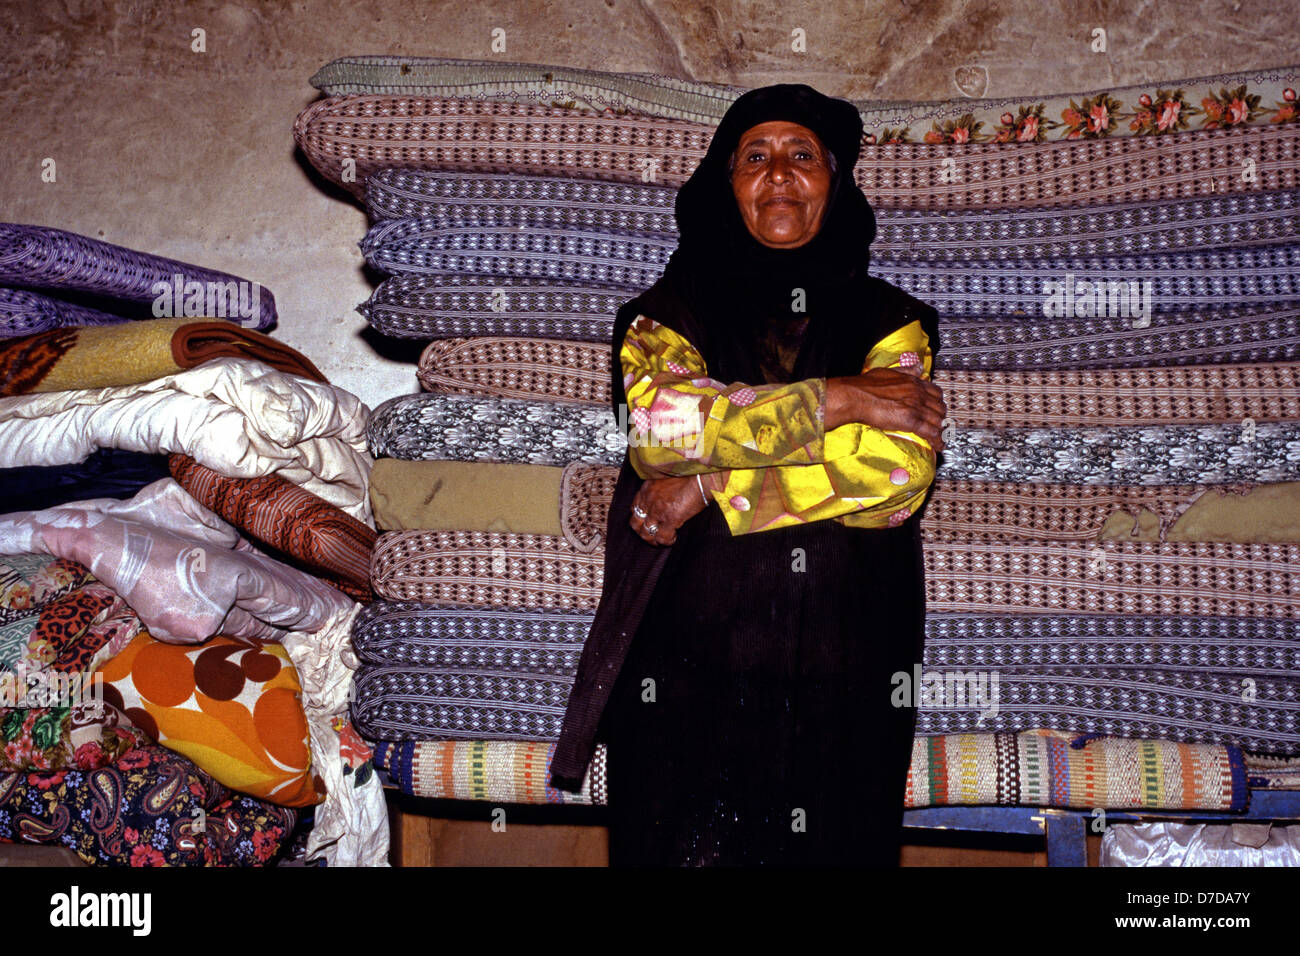 Une vieille femme bédouin de la tribu Bedul Huwaitat l'une des tribus qui ont toujours vécu dans la région de Petra portant des vêtements traditionnels à l'intérieur d'une grotte residence taillé dans le roc de Wadi Musa près de Petra en Jordanie Banque D'Images